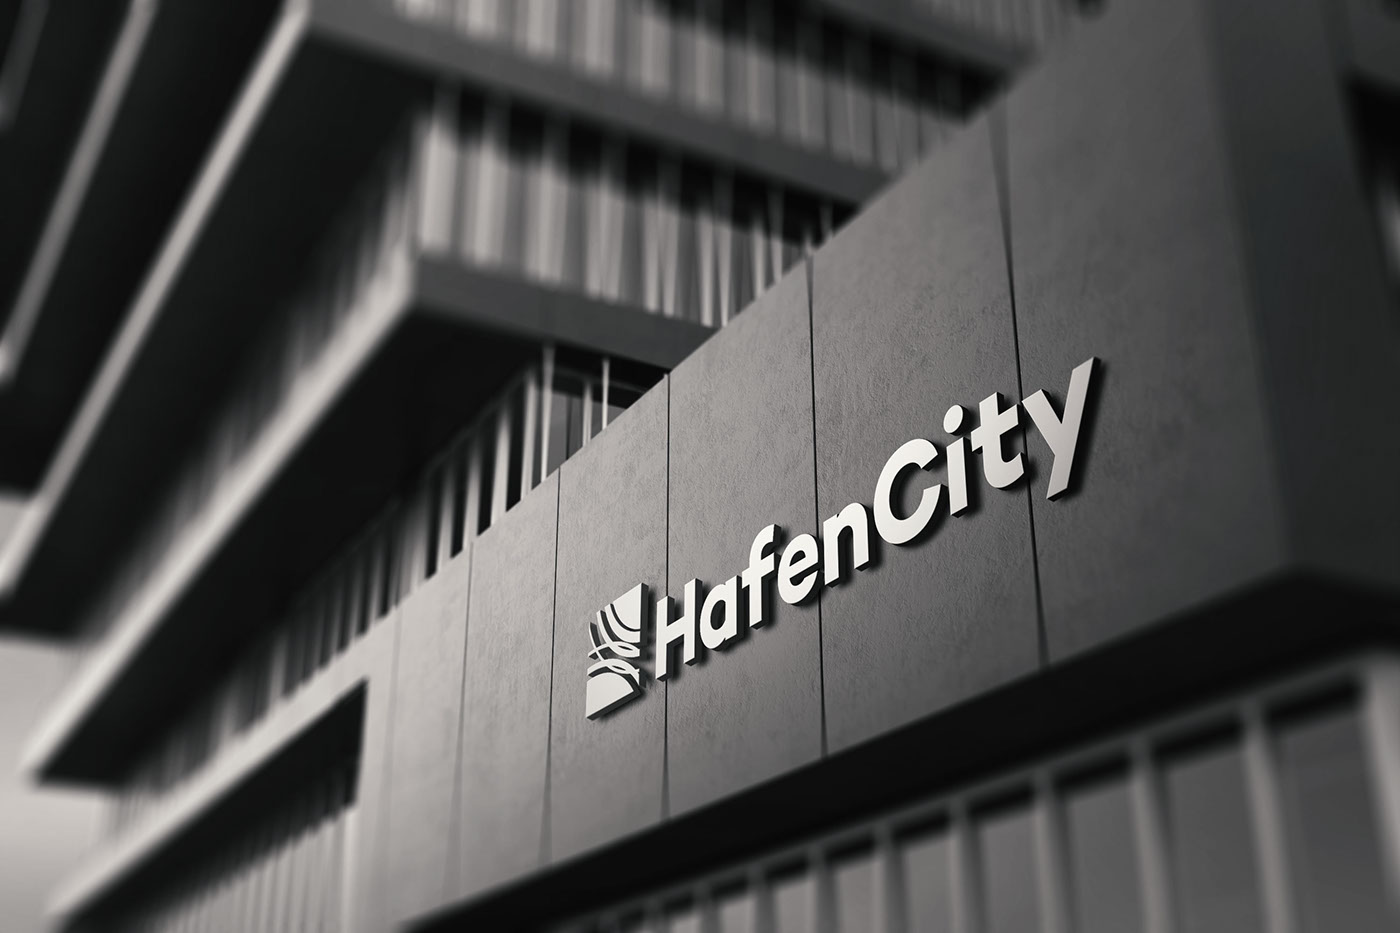 Adobe Portfolio Hafencity hamburg Stadtentwicklung urbanism   real estate immobilien pr marketing  